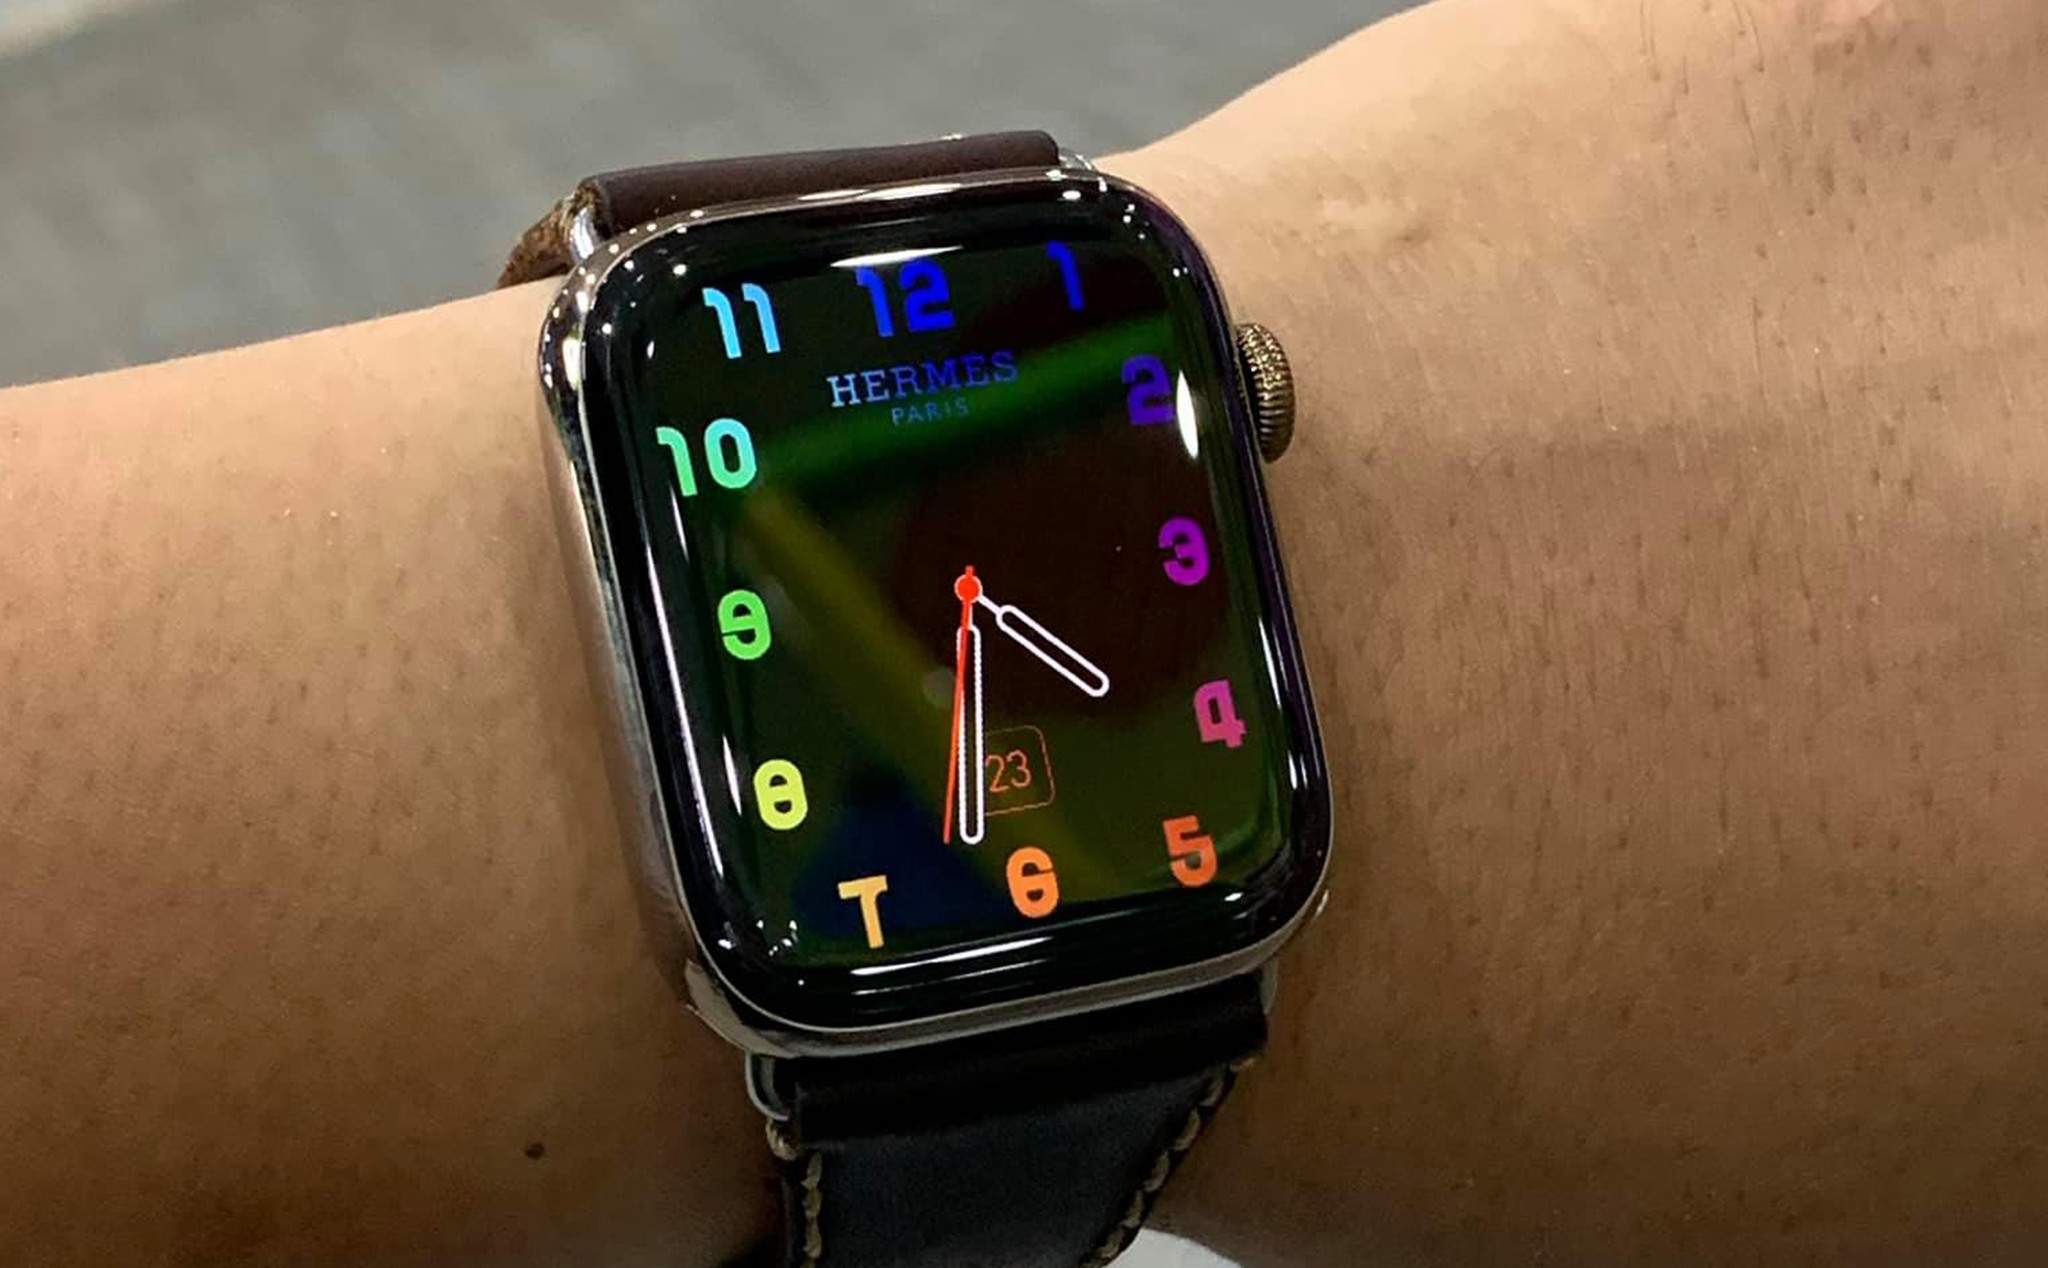 Clockology là ứng dụng đồng hồ đa năng với nhiều chức năng độc đáo và hiện đại. Với giao diện thân thiện, Clockology không chỉ đáp ứng nhu cầu xem giờ mà còn đem đến trải nghiệm tuyệt vời cho người dùng Apple Watch.